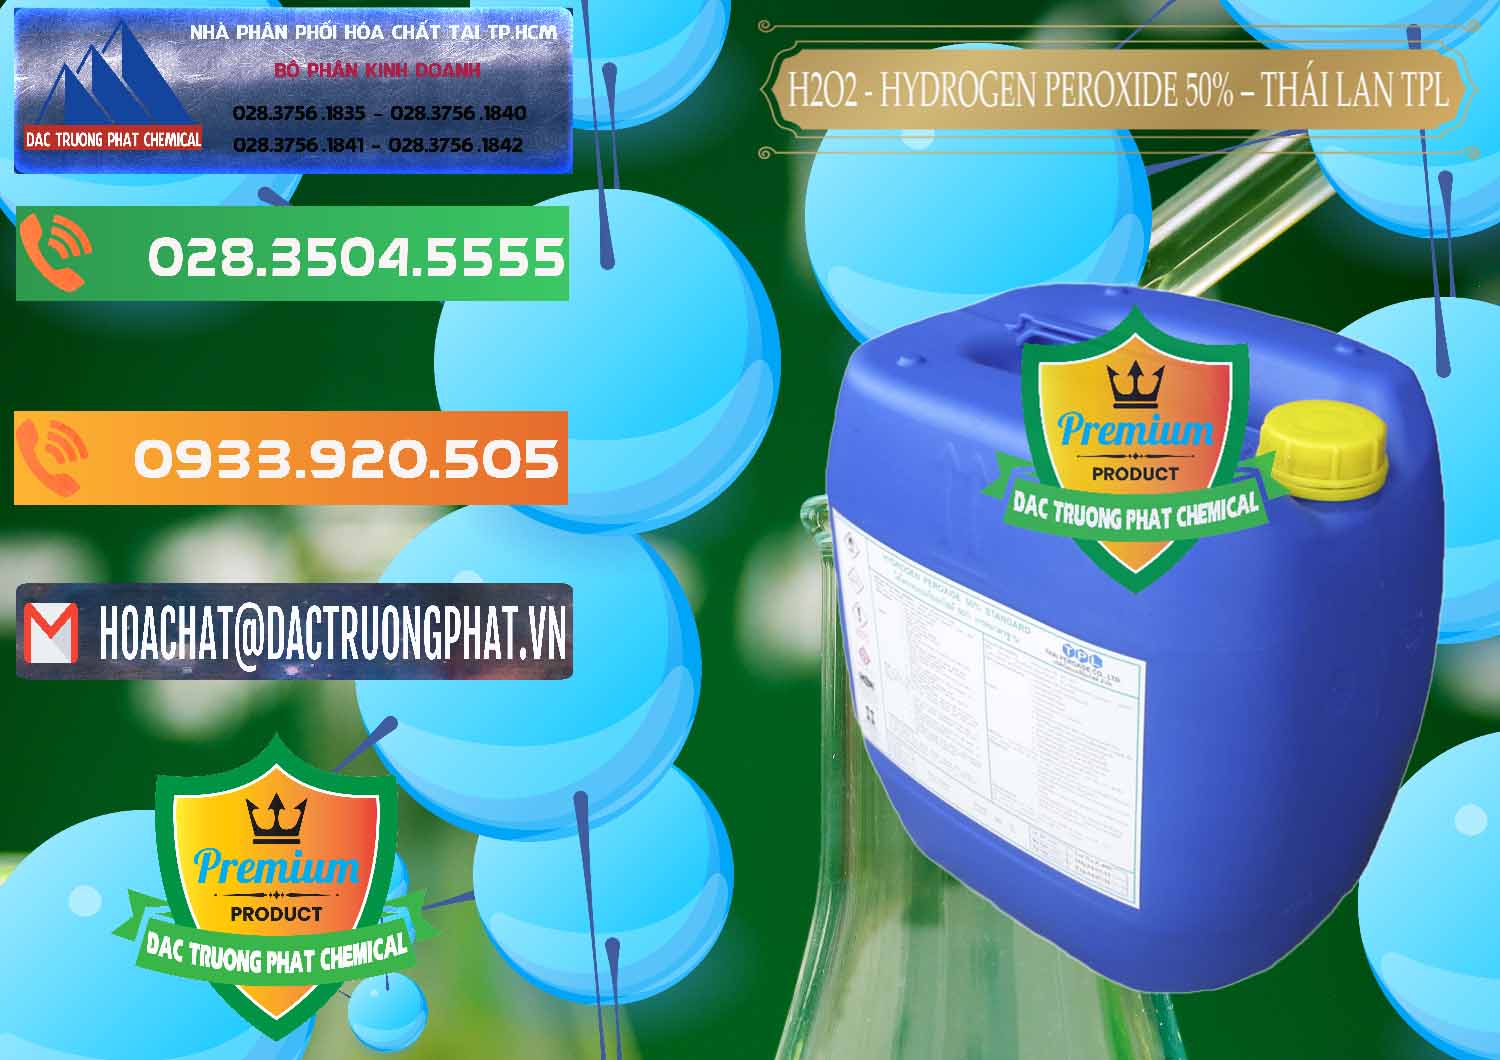 Nơi chuyên bán và cung ứng H2O2 - Hydrogen Peroxide 50% Thái Lan TPL - 0076 - Chuyên phân phối và bán hóa chất tại TP.HCM - hoachatxulynuoc.com.vn